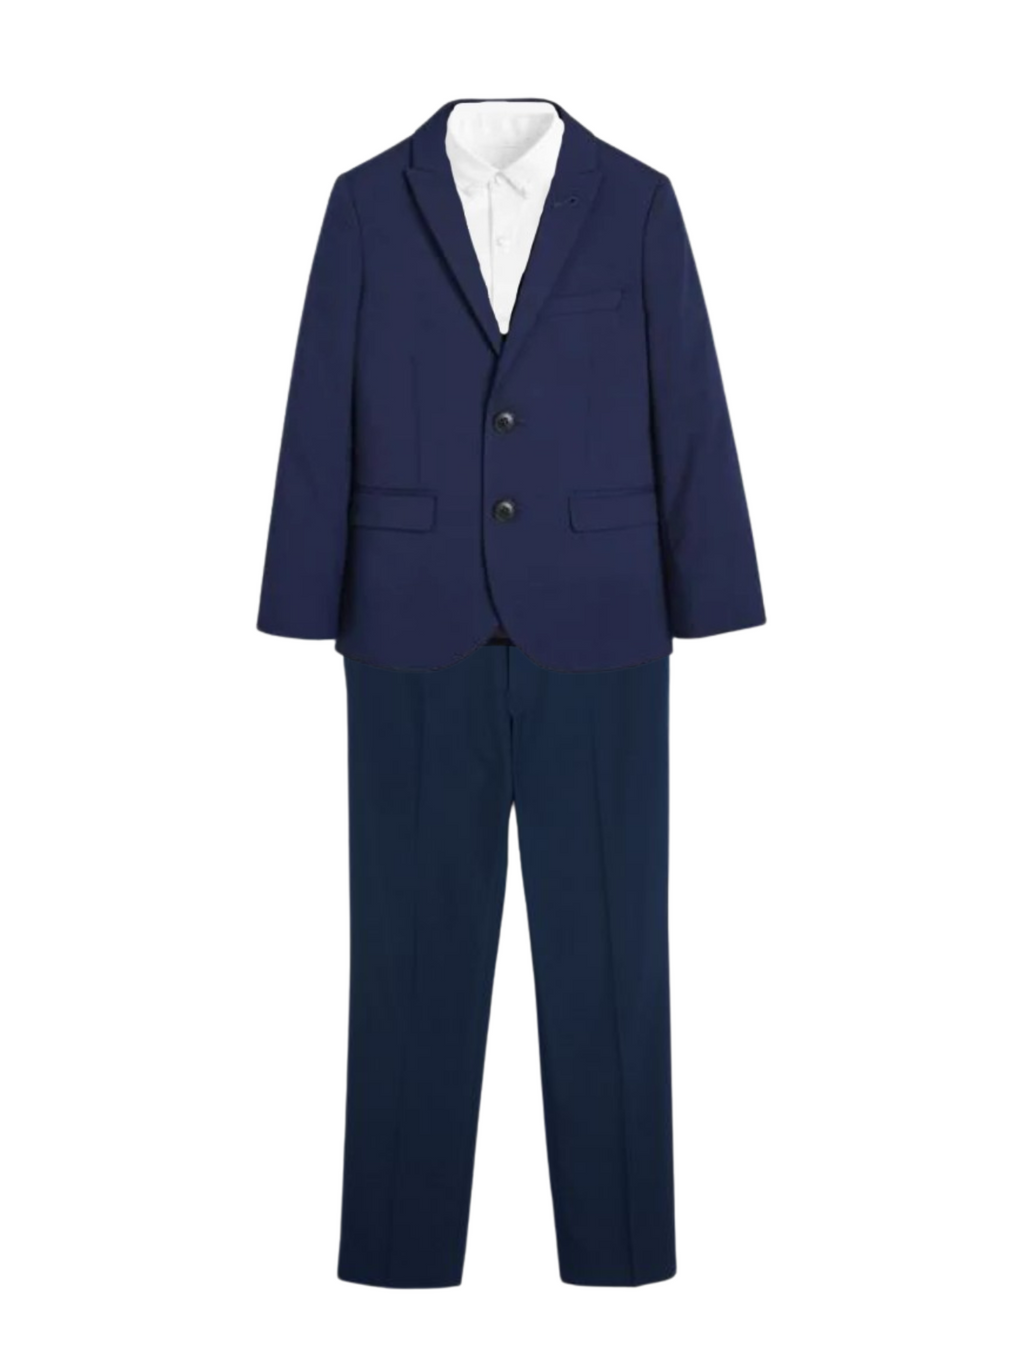 Jaxon Navy Blue Blazer Suit